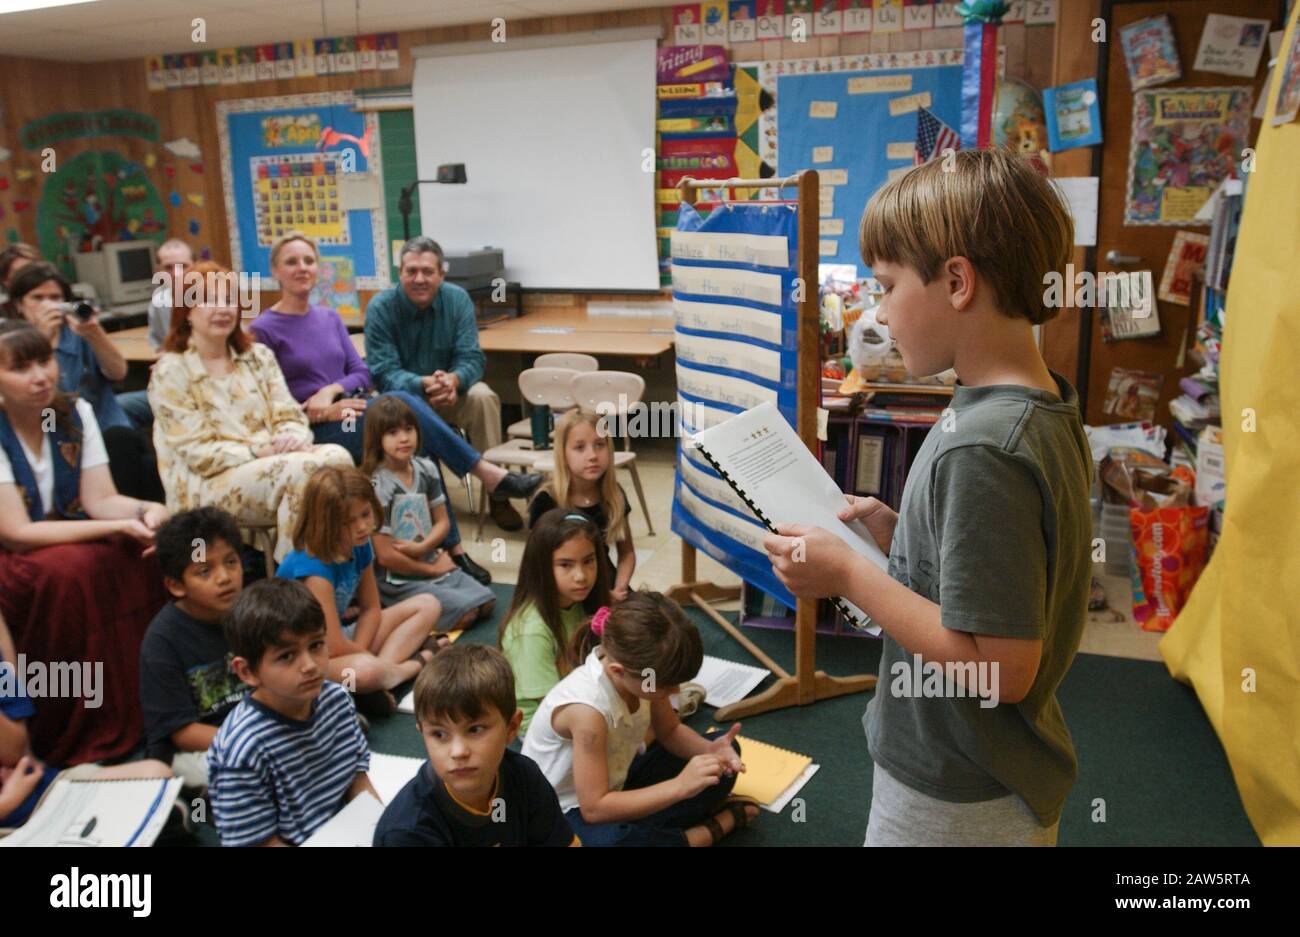 Studente di seconda classe alla Barton Hills Elementary School di Austin, Texas, legge il suo rapporto scientifico ai compagni di classe durante un 'gruppo editoriale' per i soggetti scientifici, mentre i genitori ascoltano nella parte posteriore della camera. Foto Stock